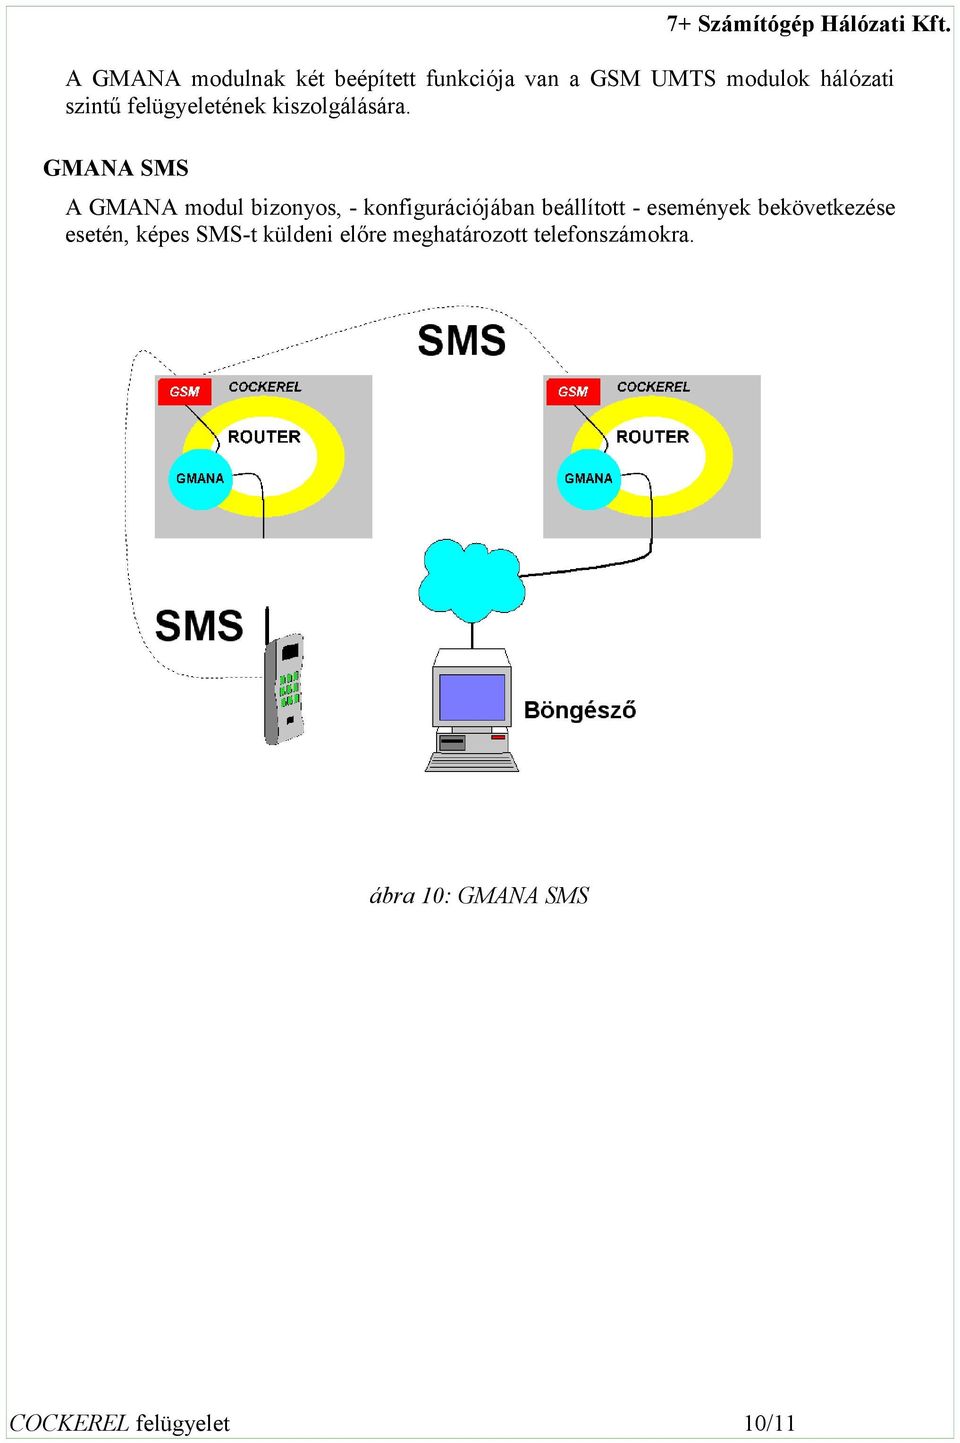 GMANA SMS A GMANA modul bizonyos, - konfigurációjában beállított - események